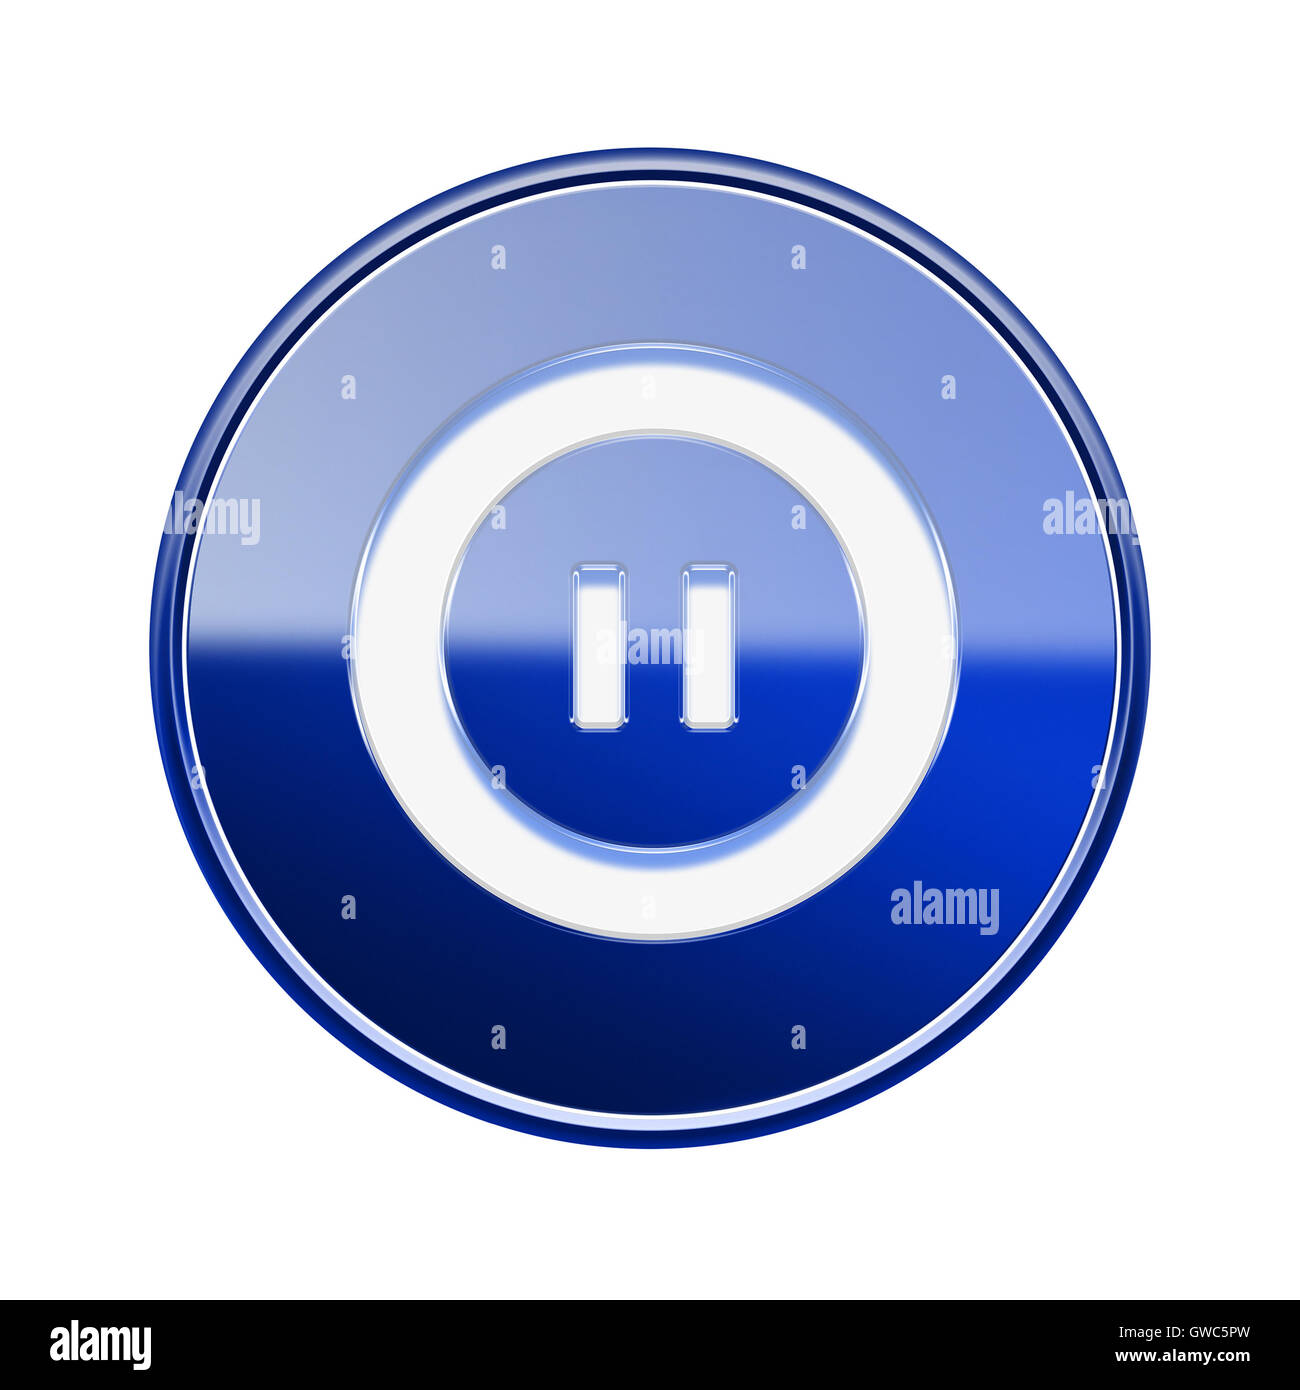 L'icône Pause bleu brillant, isolé sur fond blanc Banque D'Images